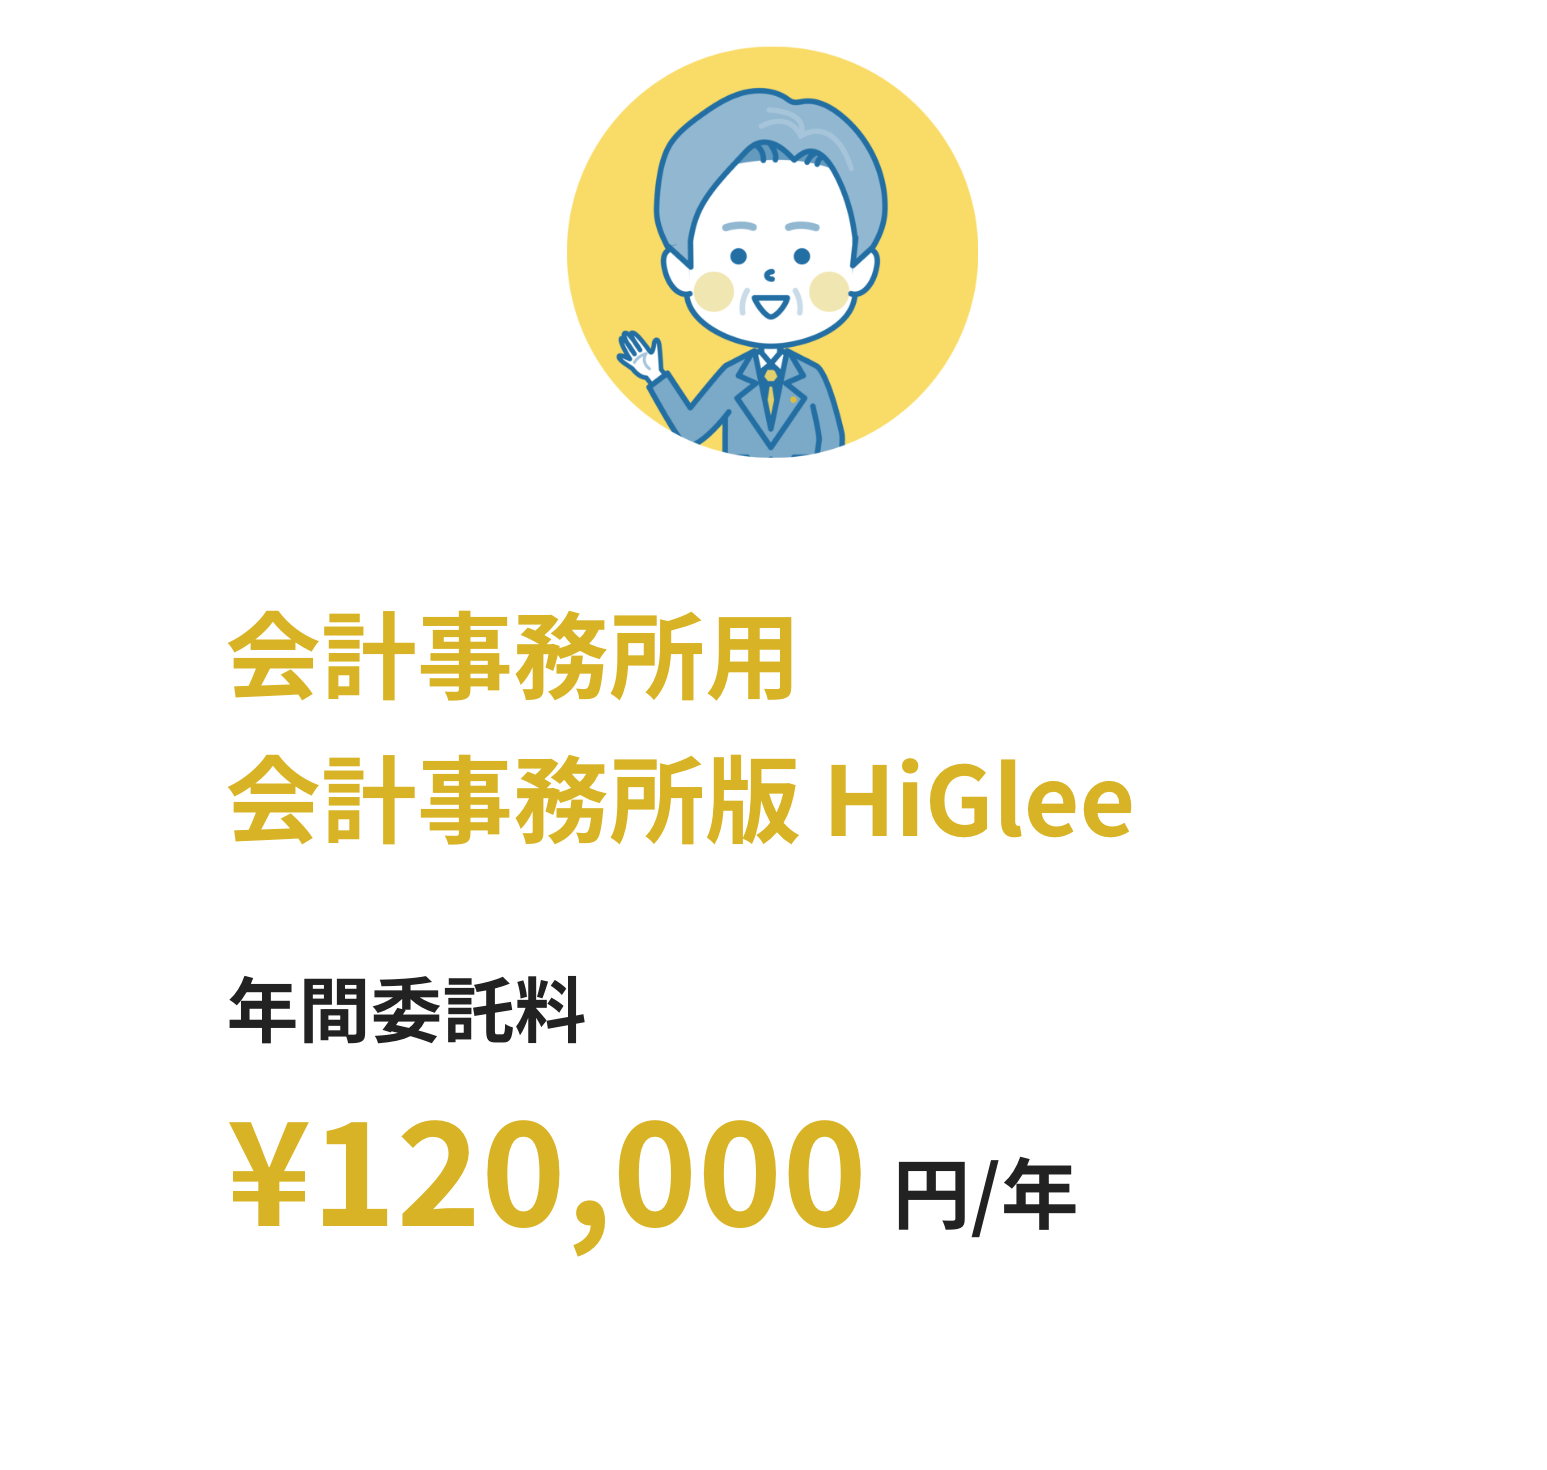 個人/企業用クライアント版HiGlee 月額利用料10,000円/年